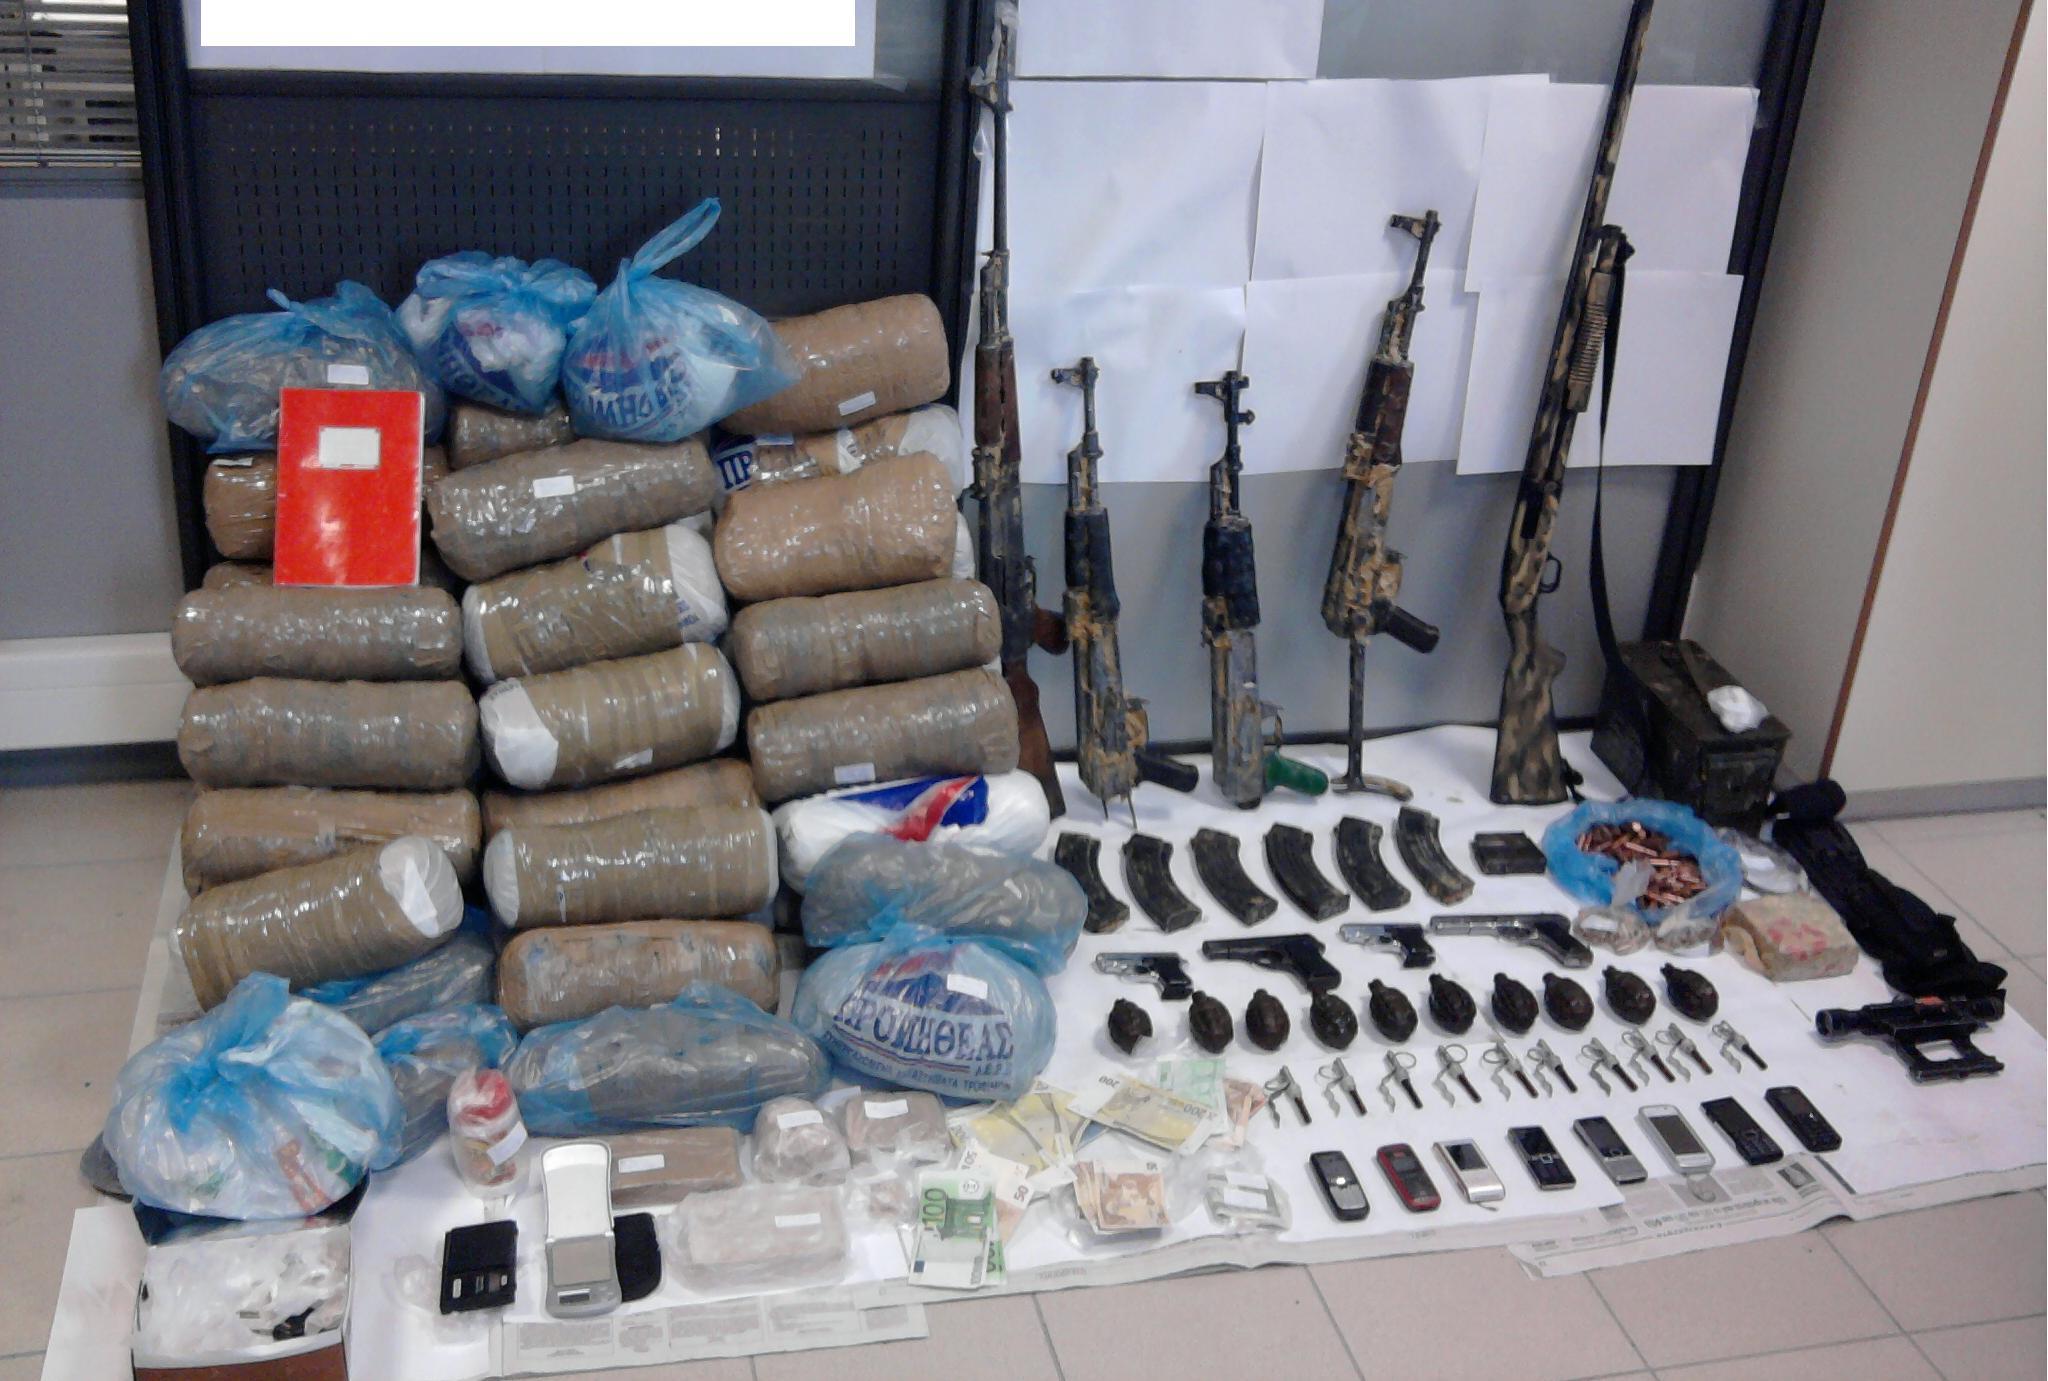 Τα όπλα και τα ναρκωτικά που βρήκαν οι αστυνομικοί (ΦΩΤΟ ΕΛΛΗΝΙΚΗ ΑΣΤΥΝΟΜΙΑ)